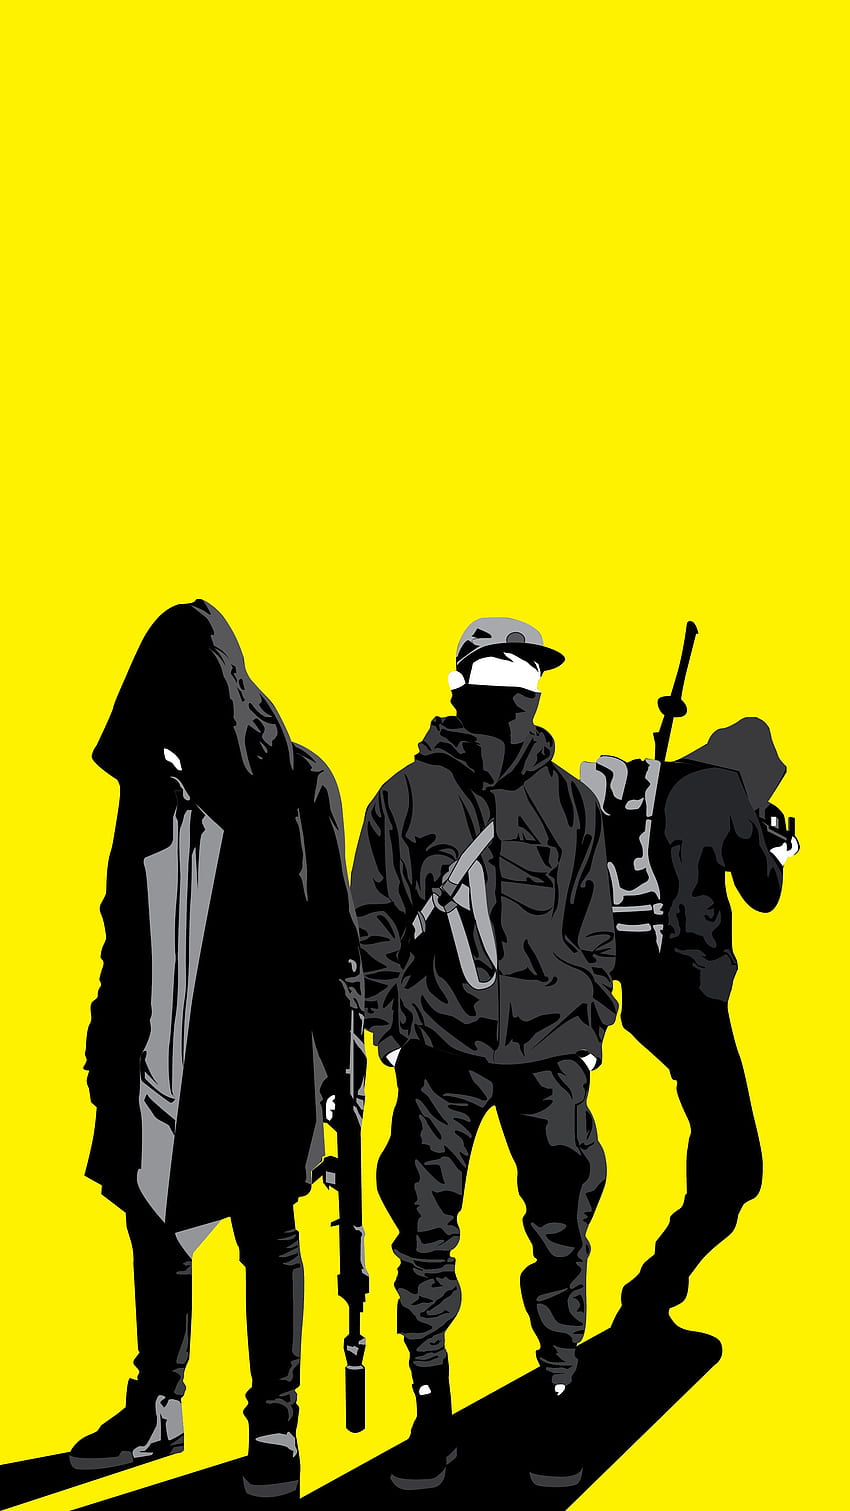 る さ さ じ ま di atas kuning. Seni rupa karya seni, Kartun lucu, karakter Cyberpunk, Yellow Anime Samurai wallpaper ponsel HD